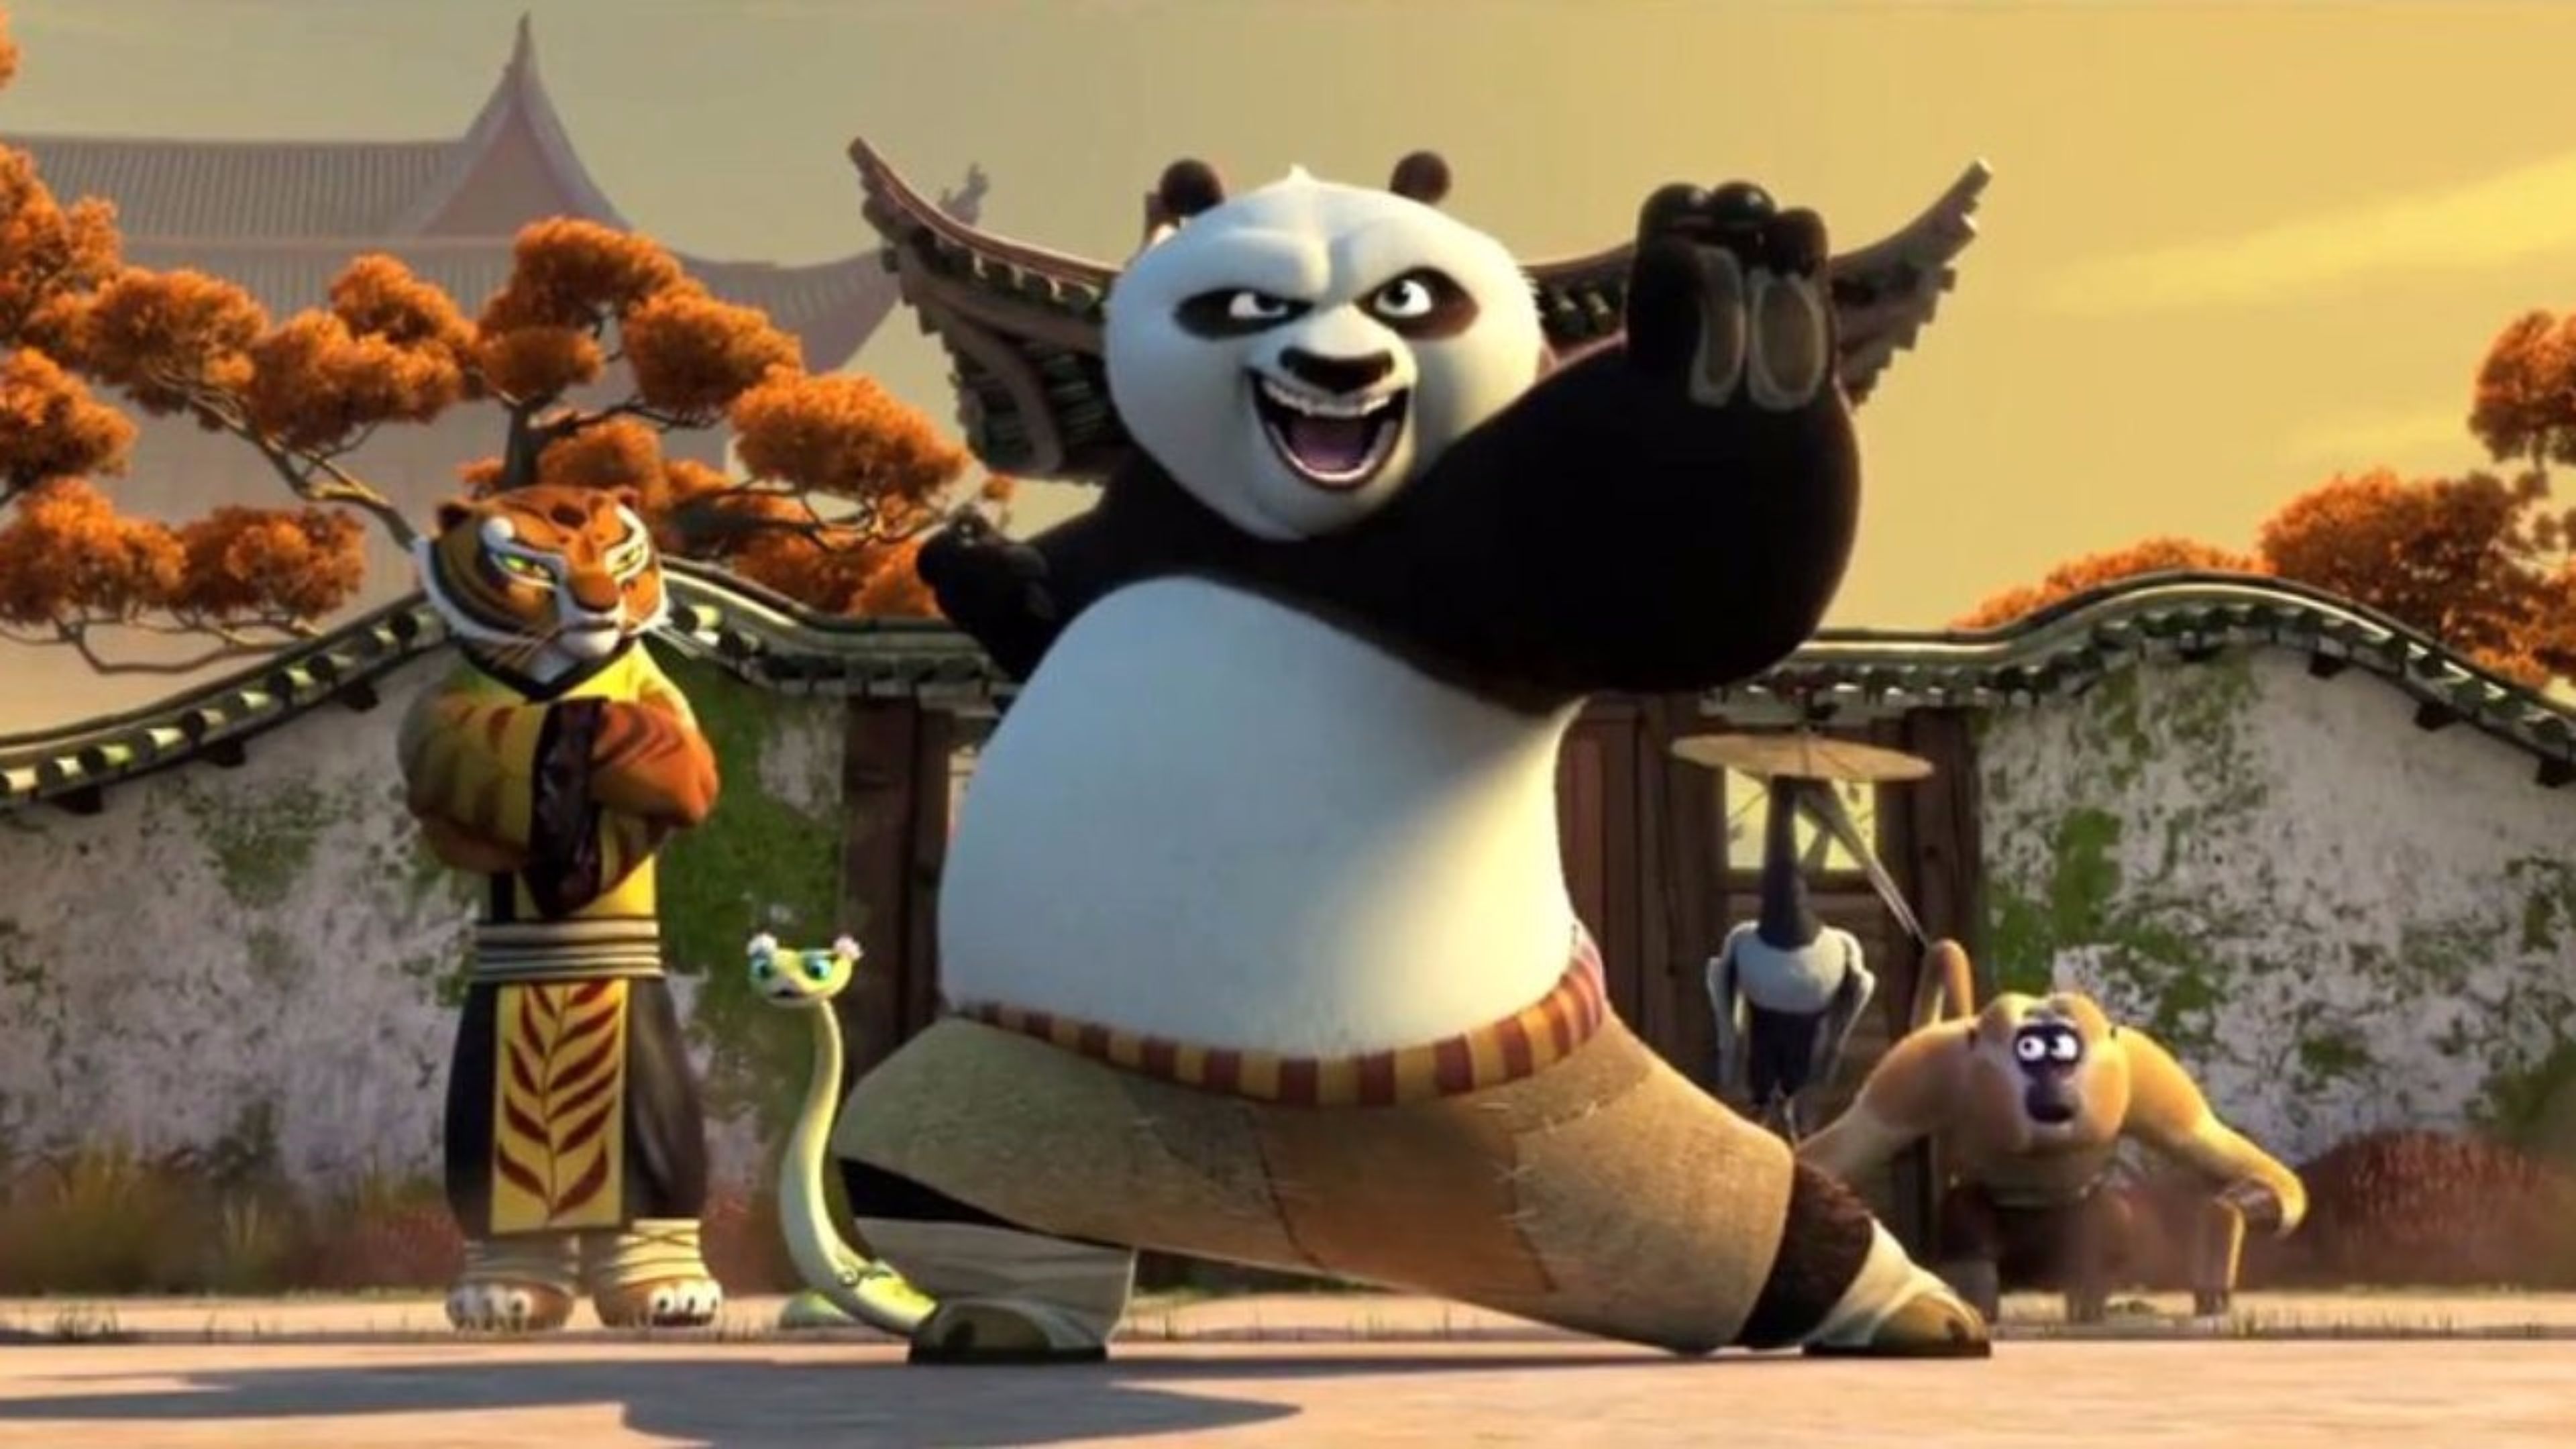 Amazing Kung Fu Panda 3 Movie 4K Wallpaper | Free 4K Wallpaper